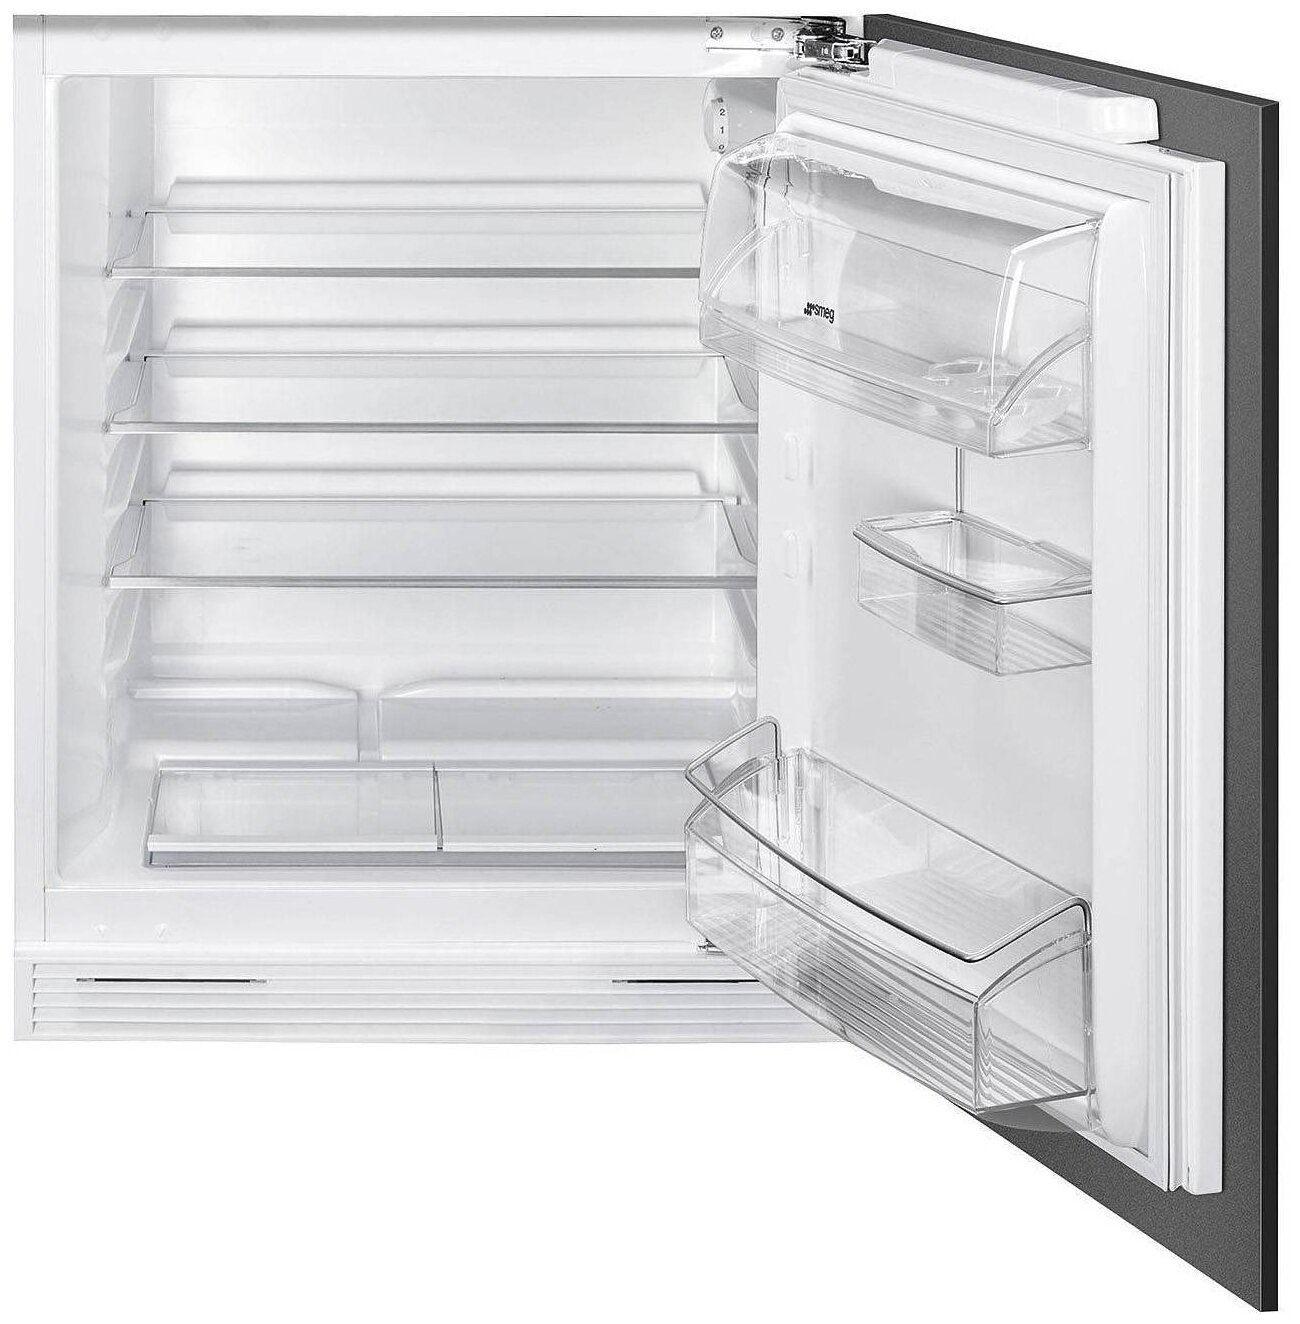 Встраиваемый холодильник Smeg s7323lfep. Встраиваемый холодильник Smeg u8l080df. Встраиваемый холодильник Smeg ud7122csp. Smeg c81721f. Купить встраиваемый однокамерный холодильник